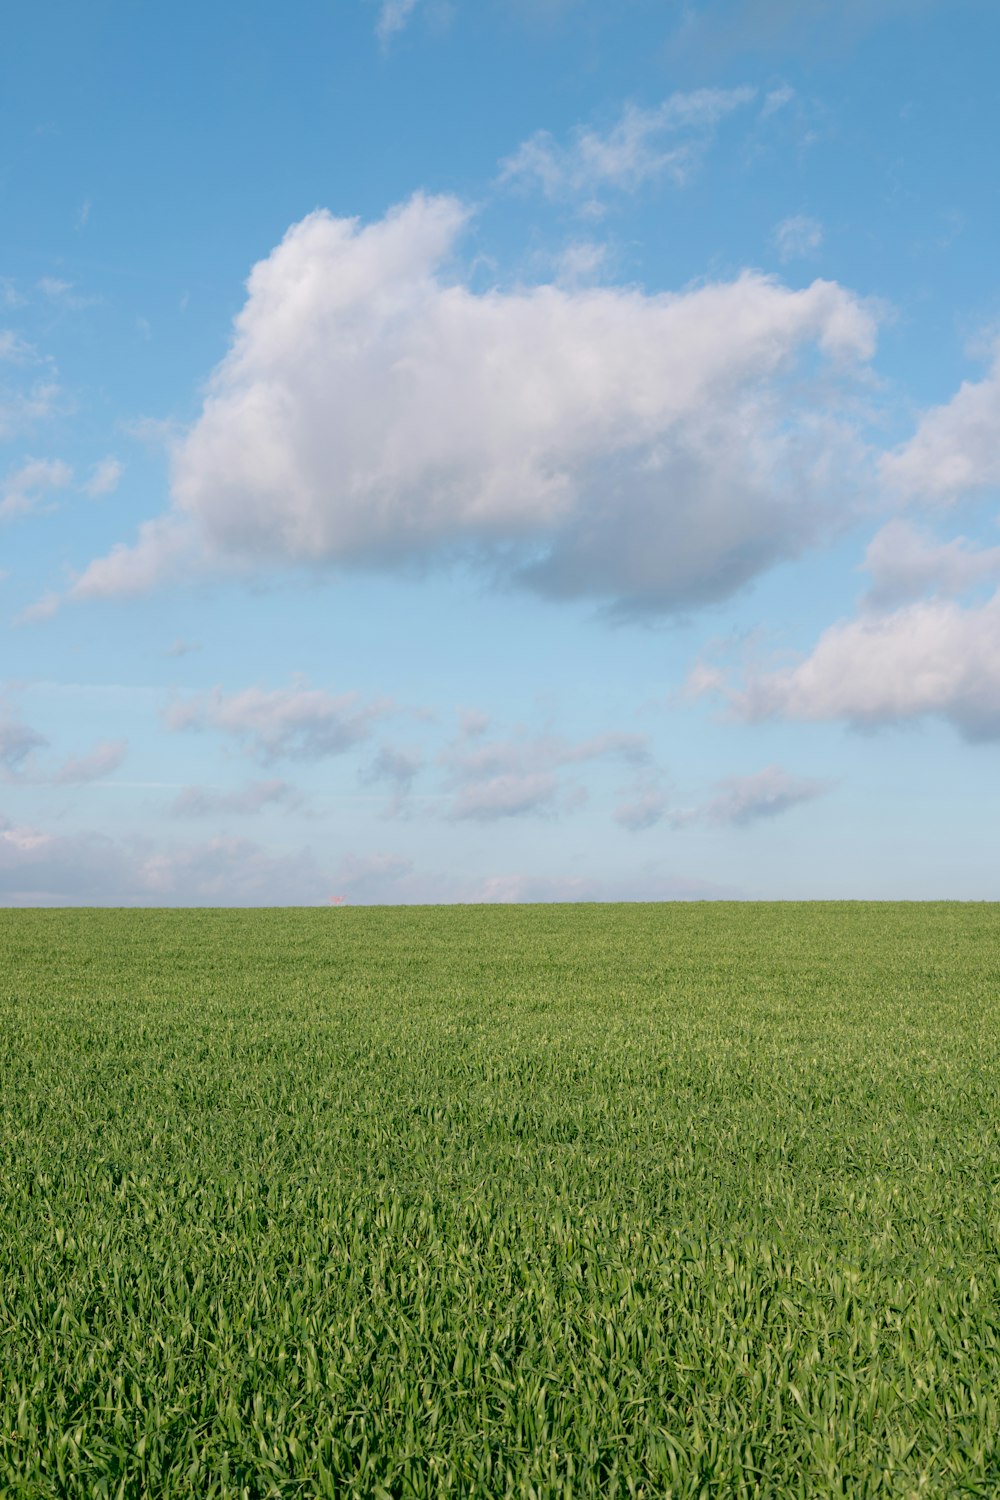 green grass field under white clouds during daytime